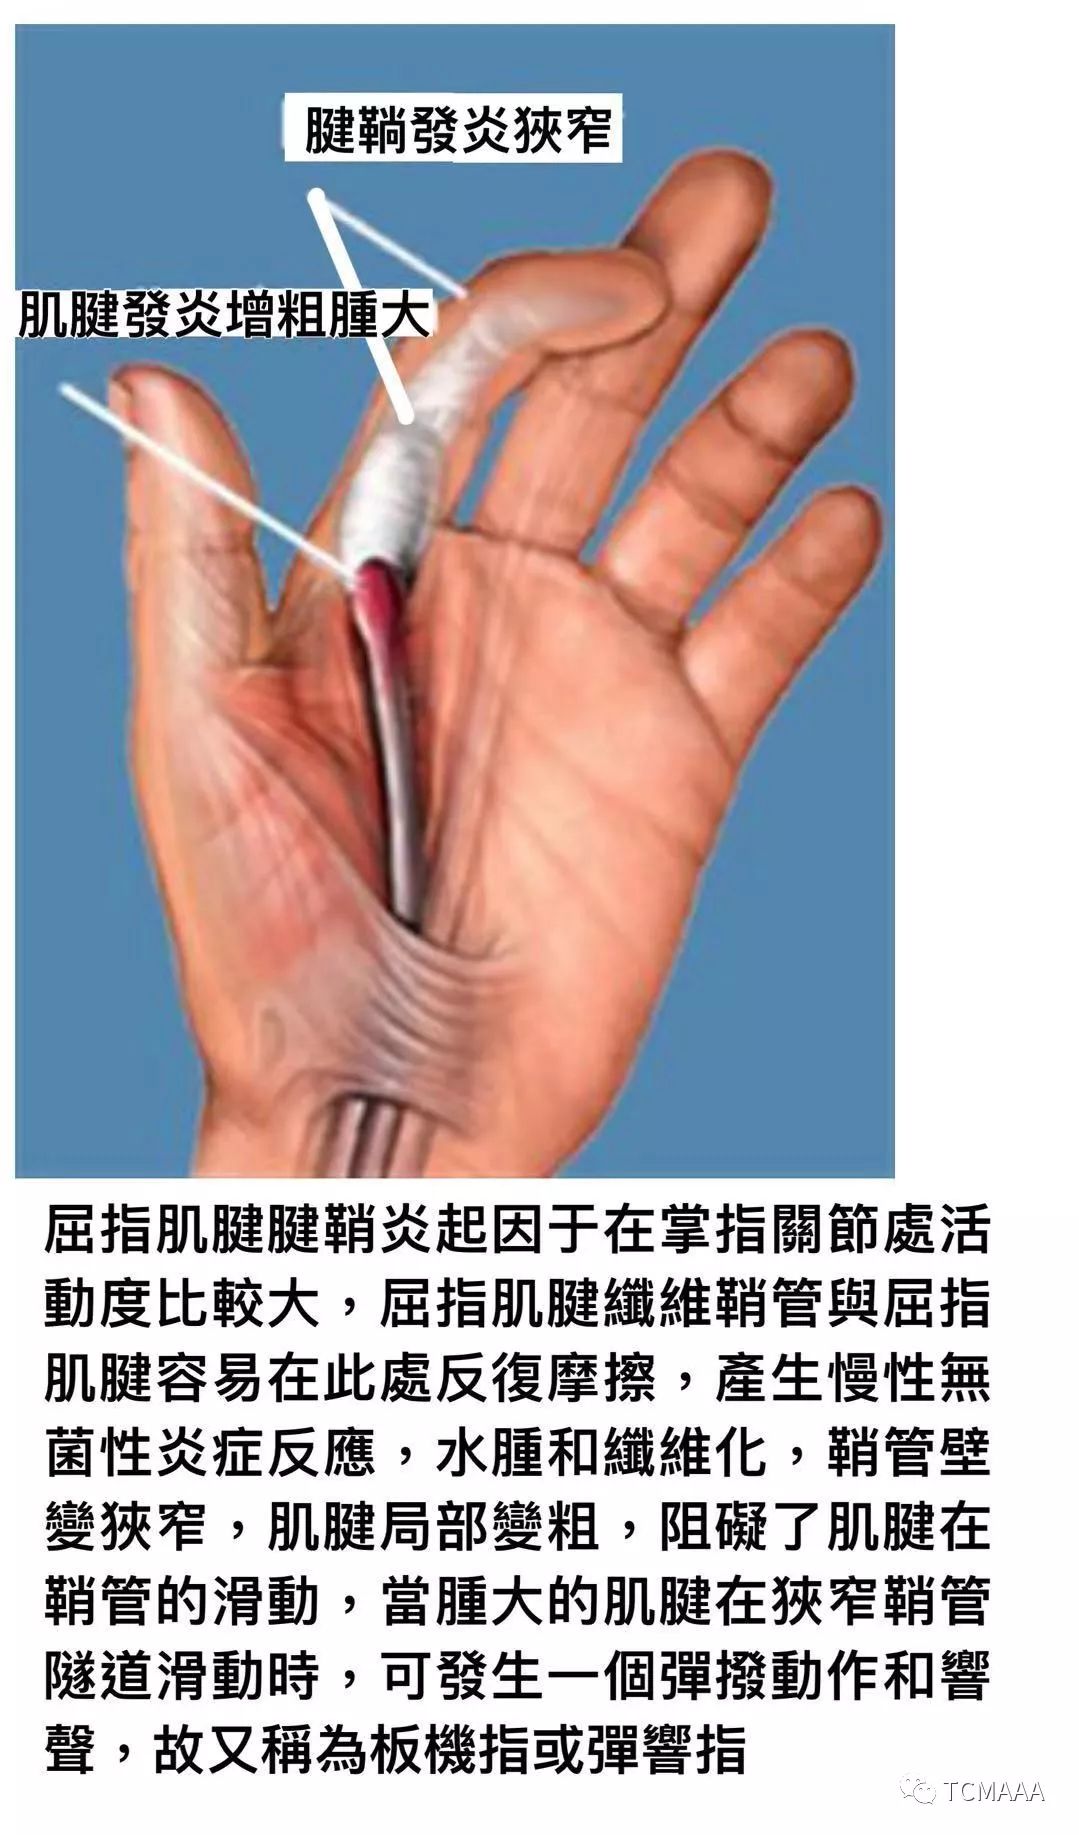 手指屈肌腱鞘炎图片